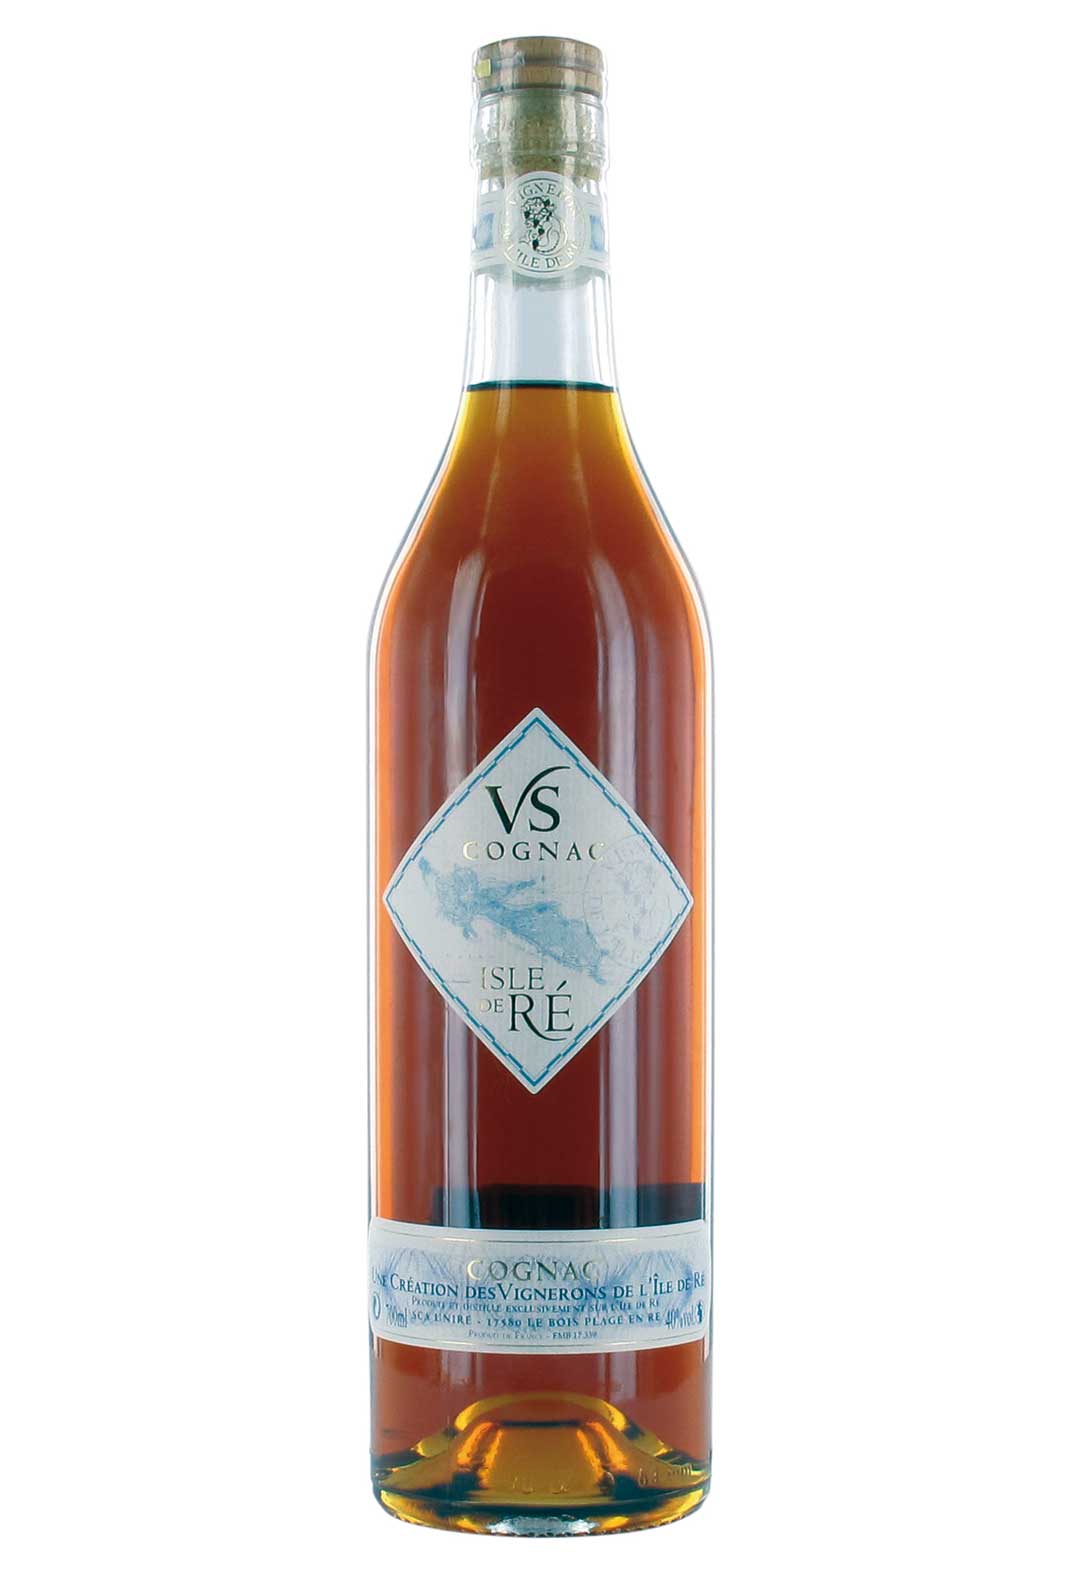 Cognac VS Isle de Ré